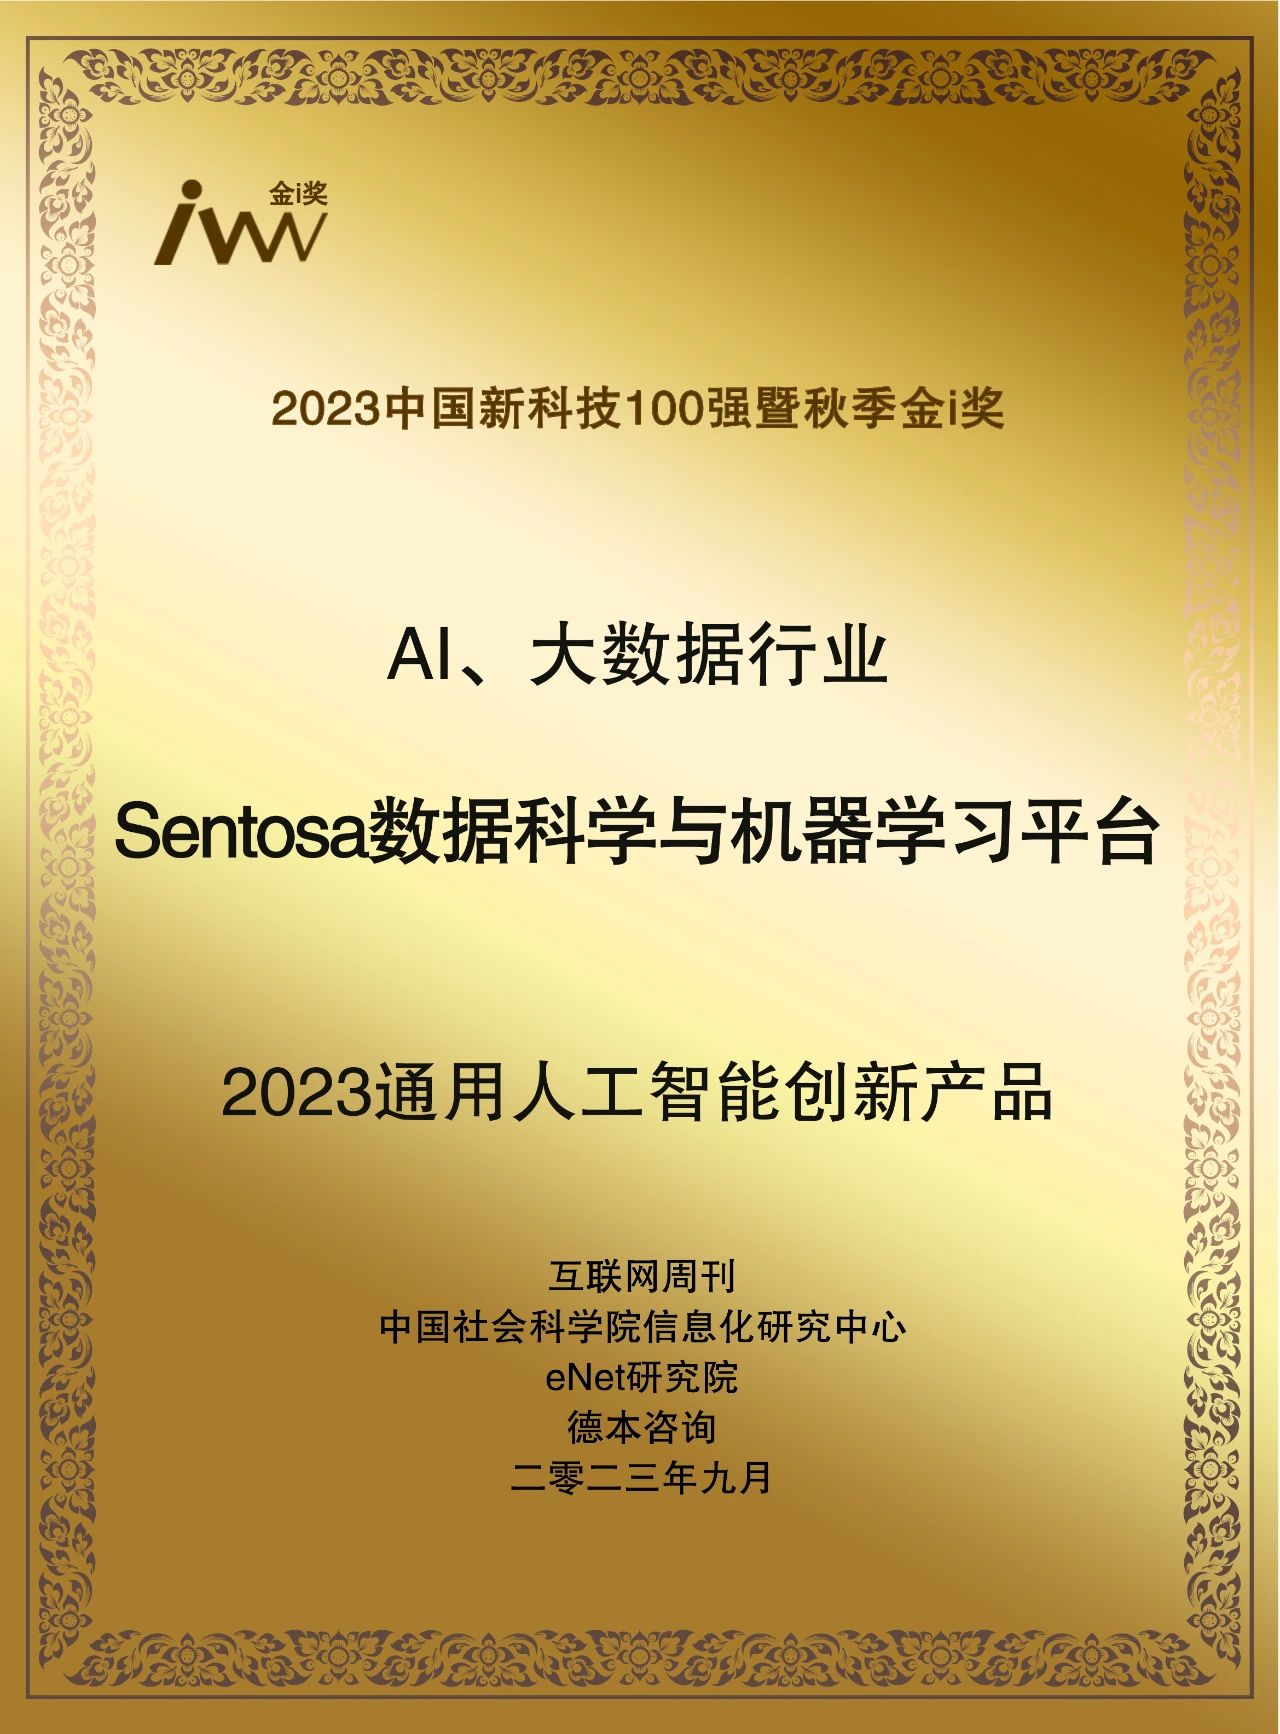 业界荣誉 | Sentosa_DSML获评“2023通用人工智能创新产品”